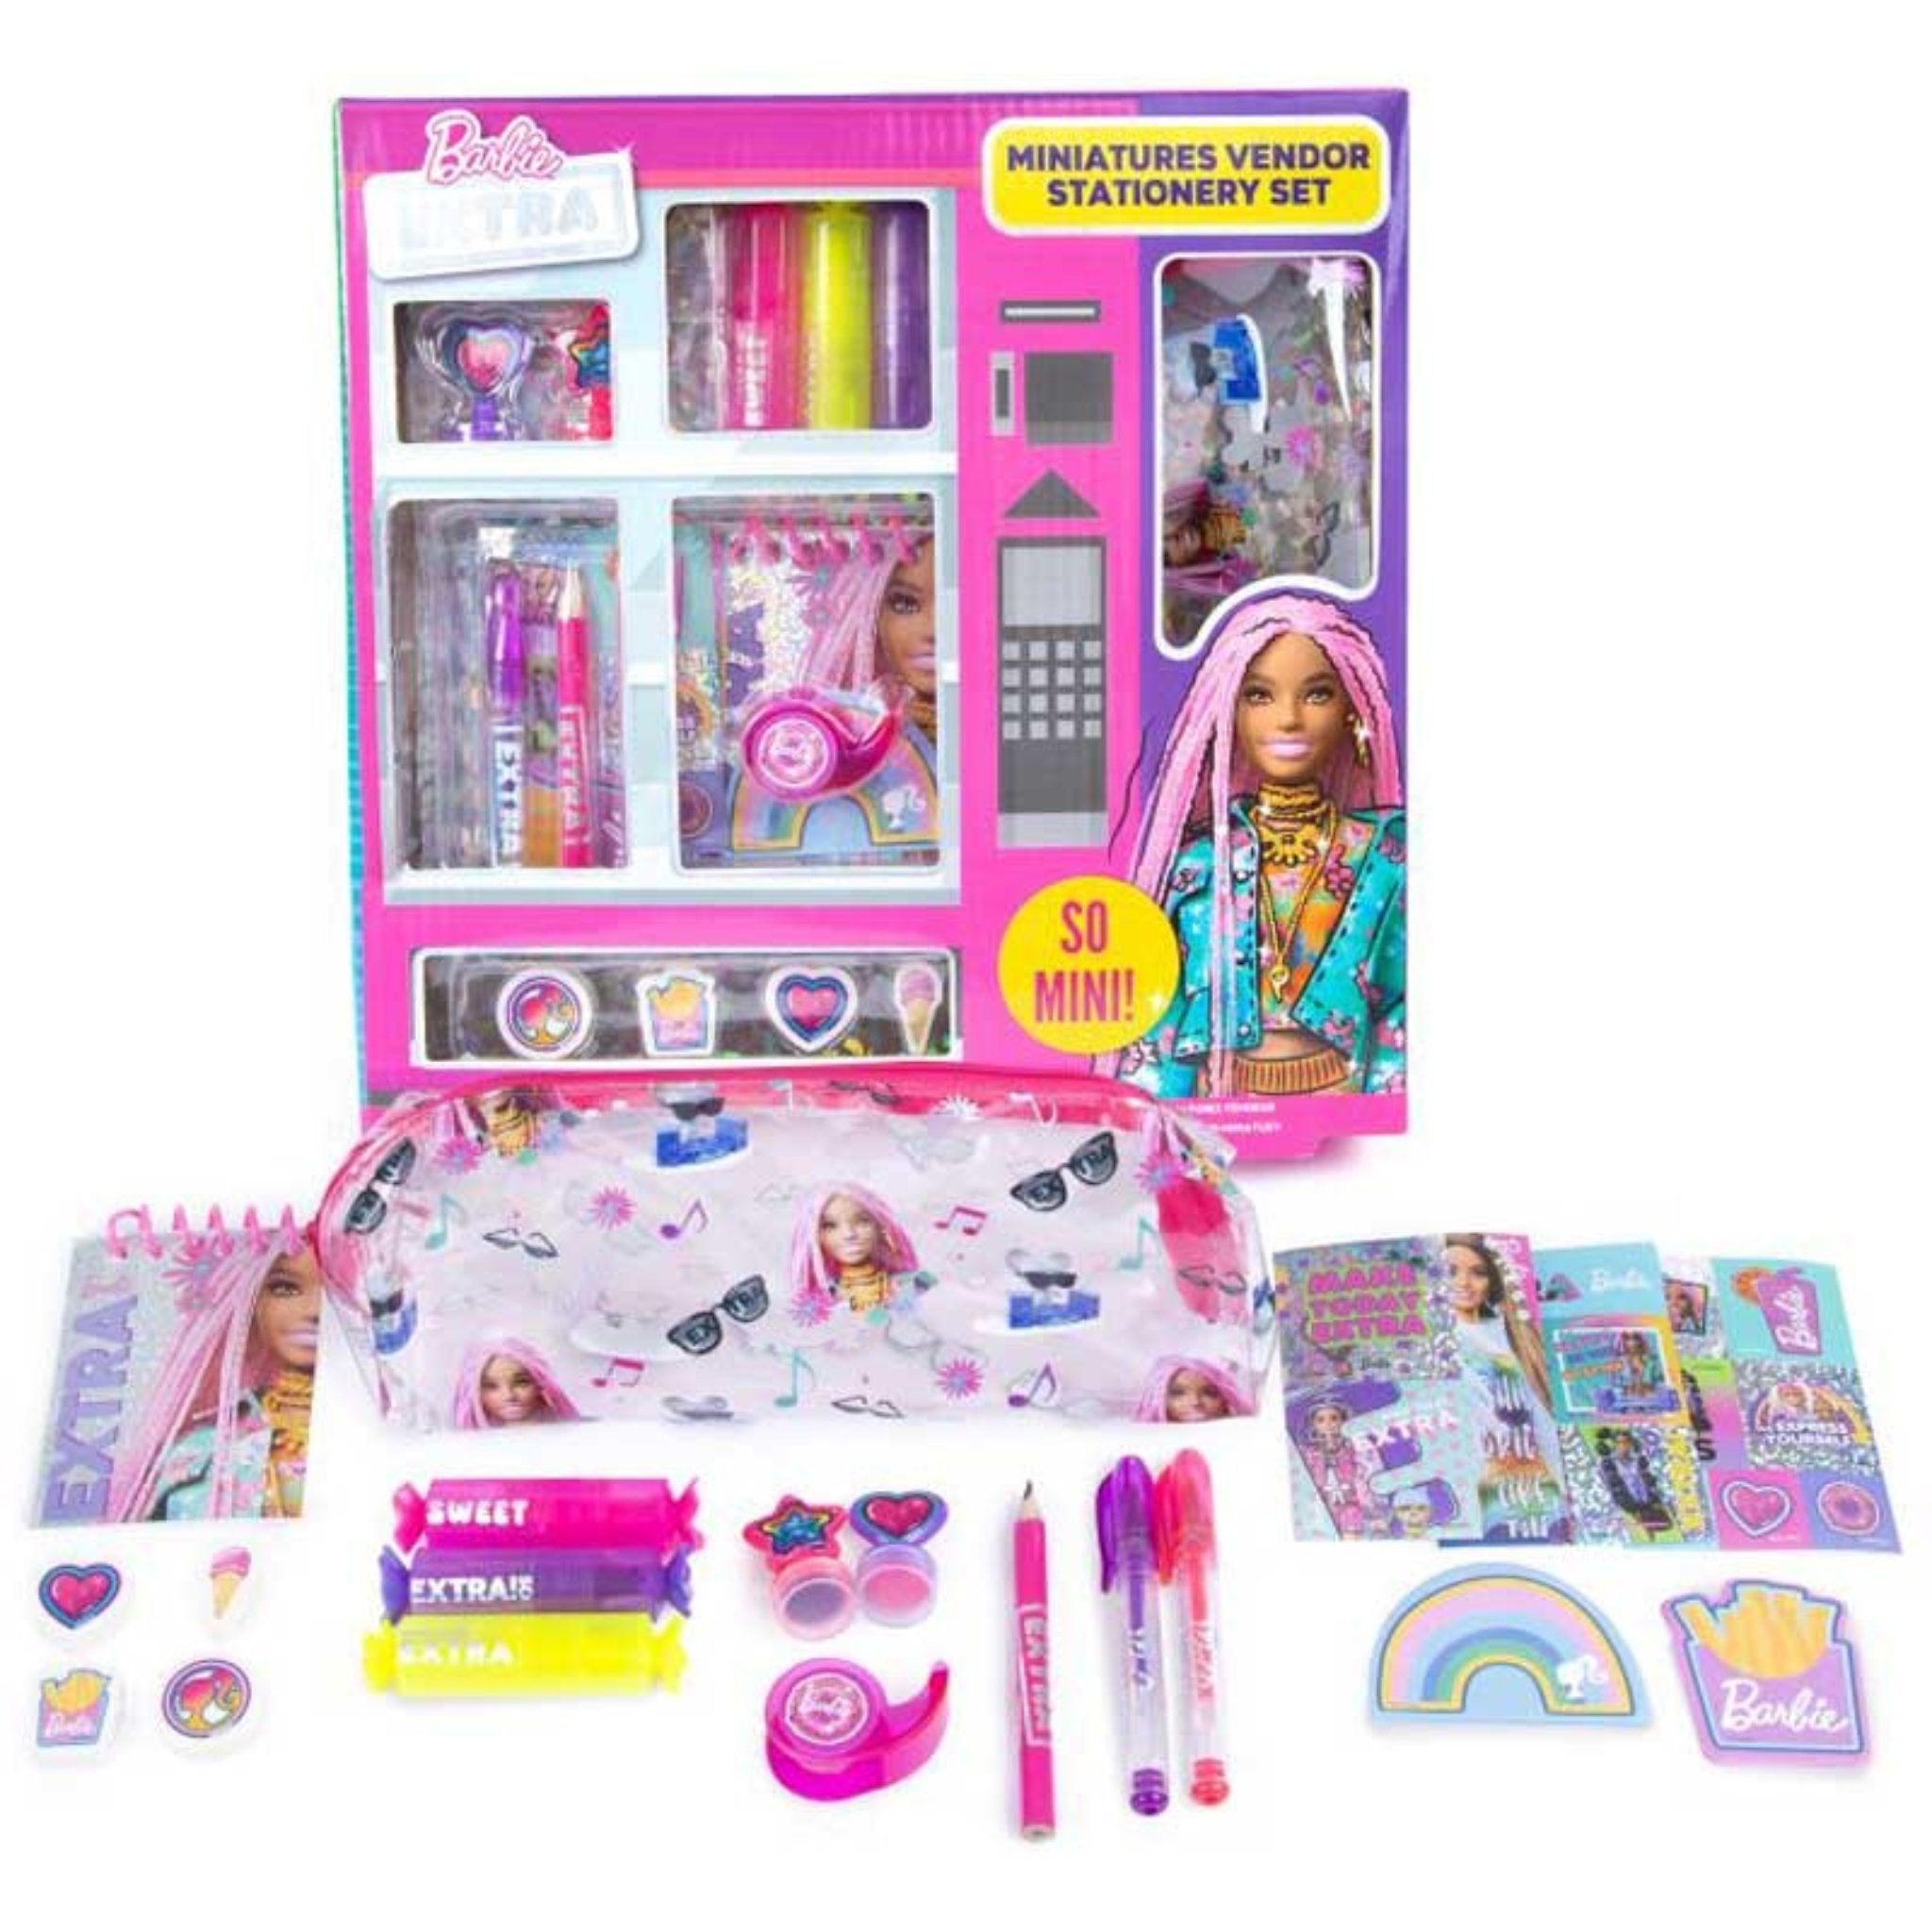 Barbie Extra Miniatures Vendor Stationery Set - PoundToys